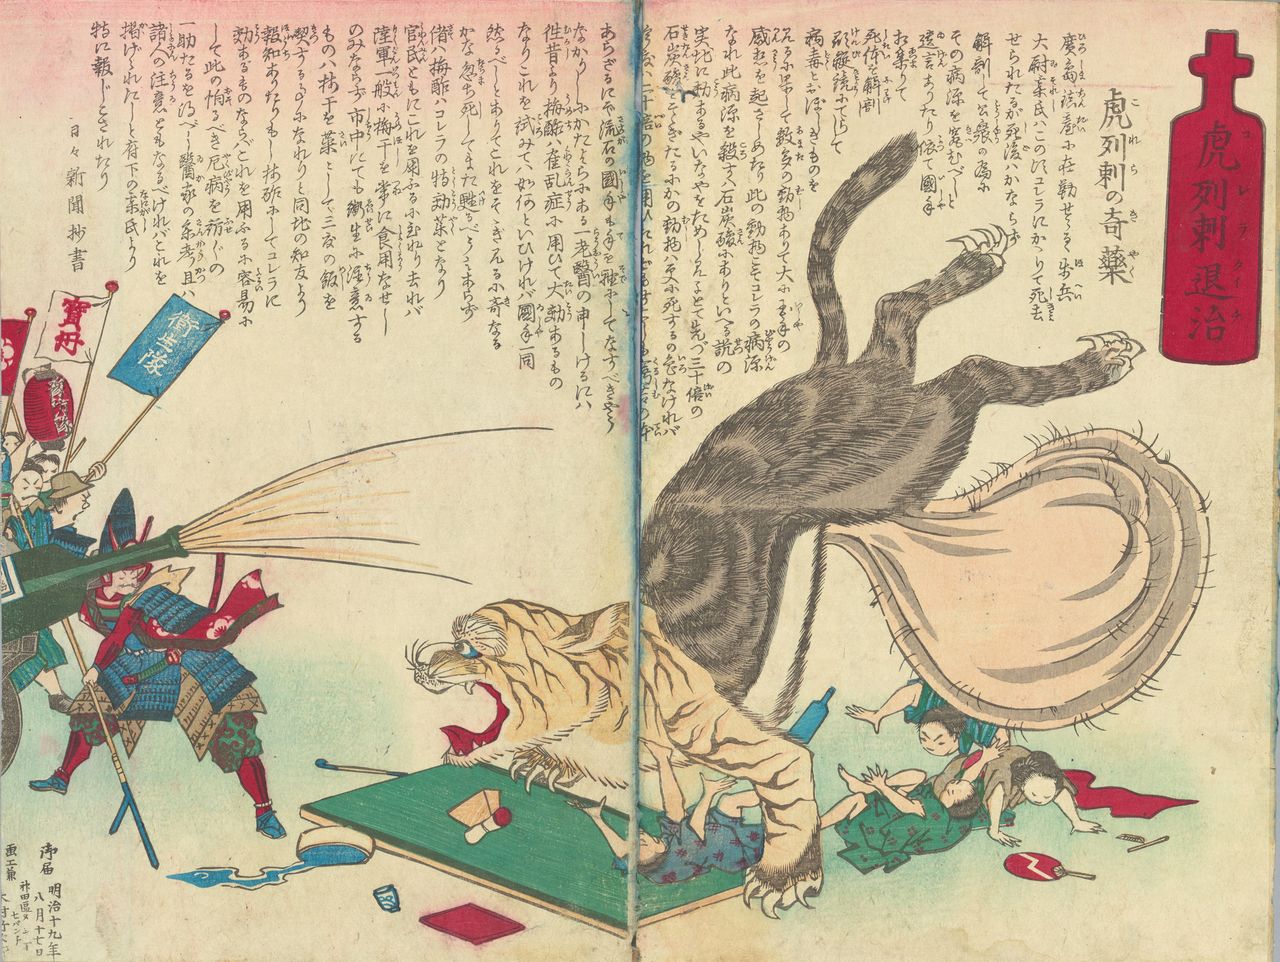 『虎列刺退治』（東京都公文書館所蔵）。「虎列刺の奇薬」として、梅酢の効果を紹介している